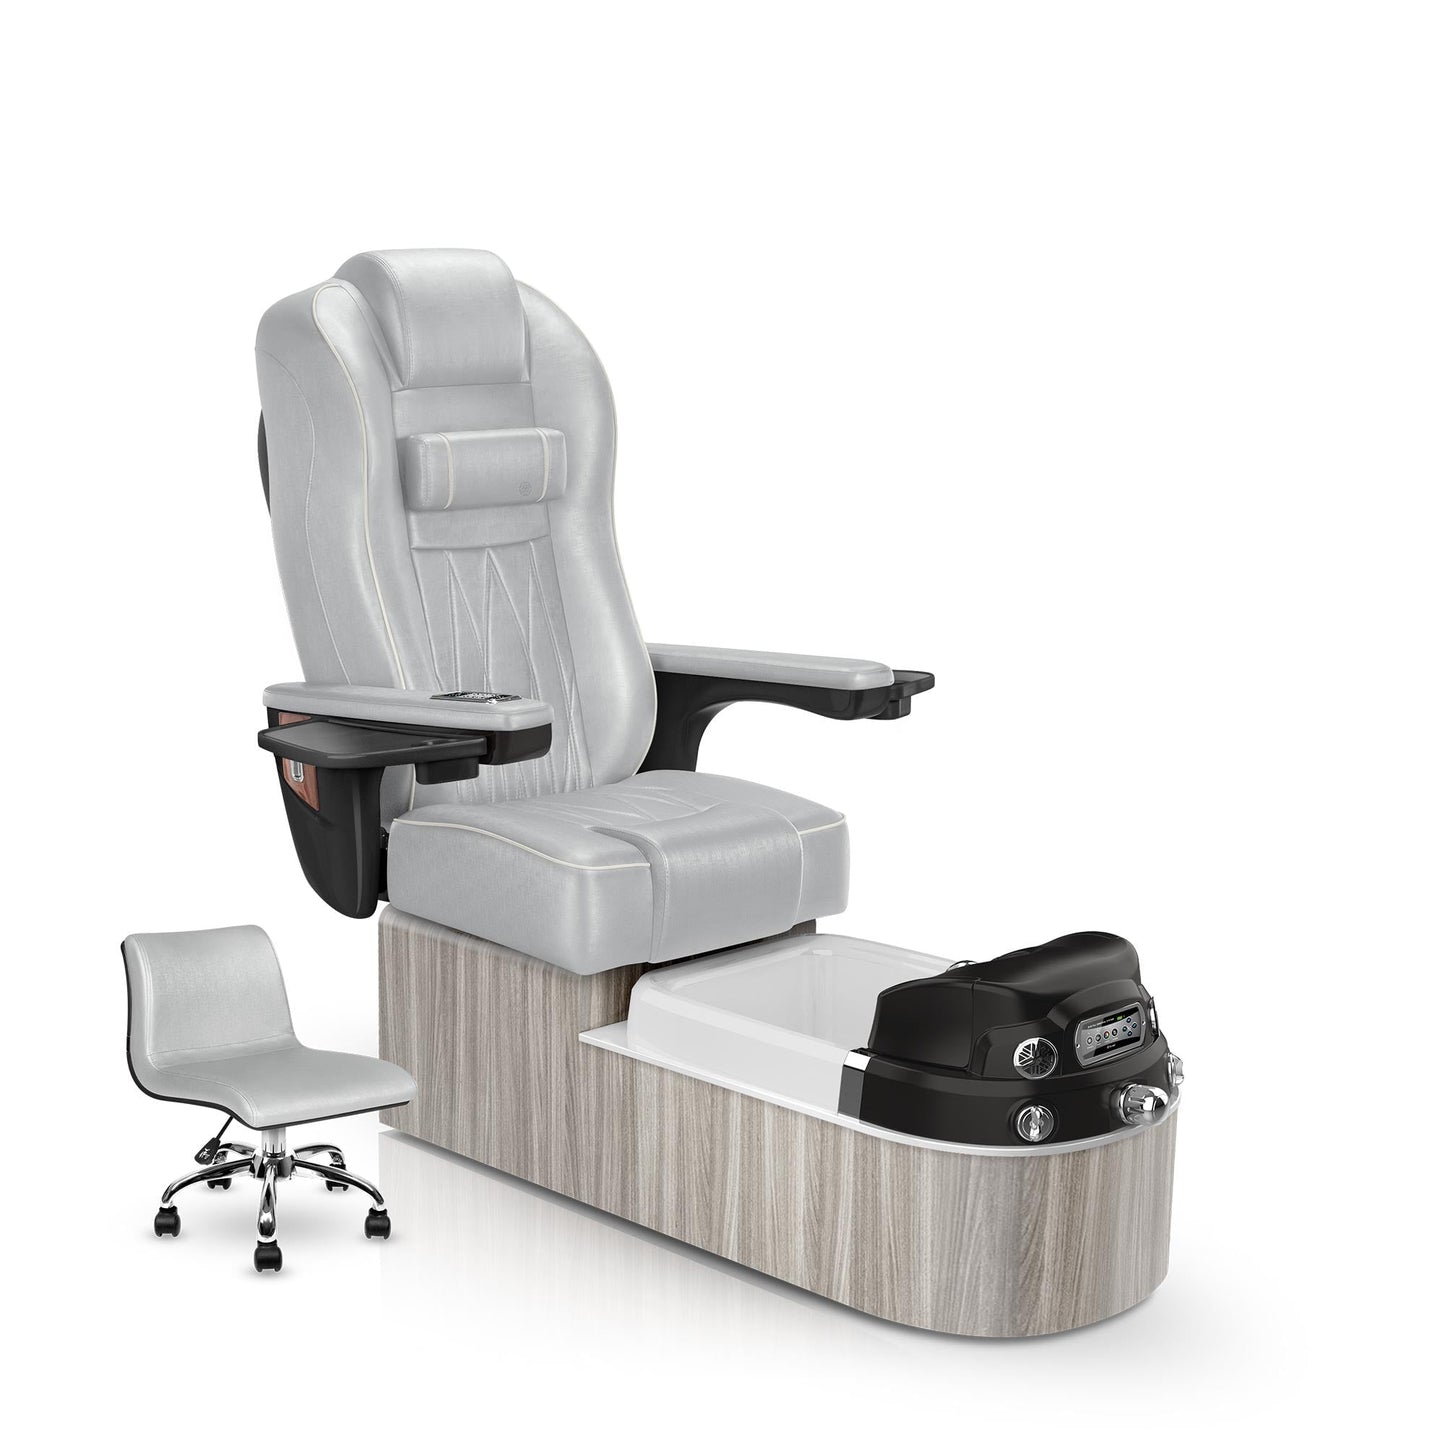 Lexor Envision pedicure chair platinum cushion and hazel base